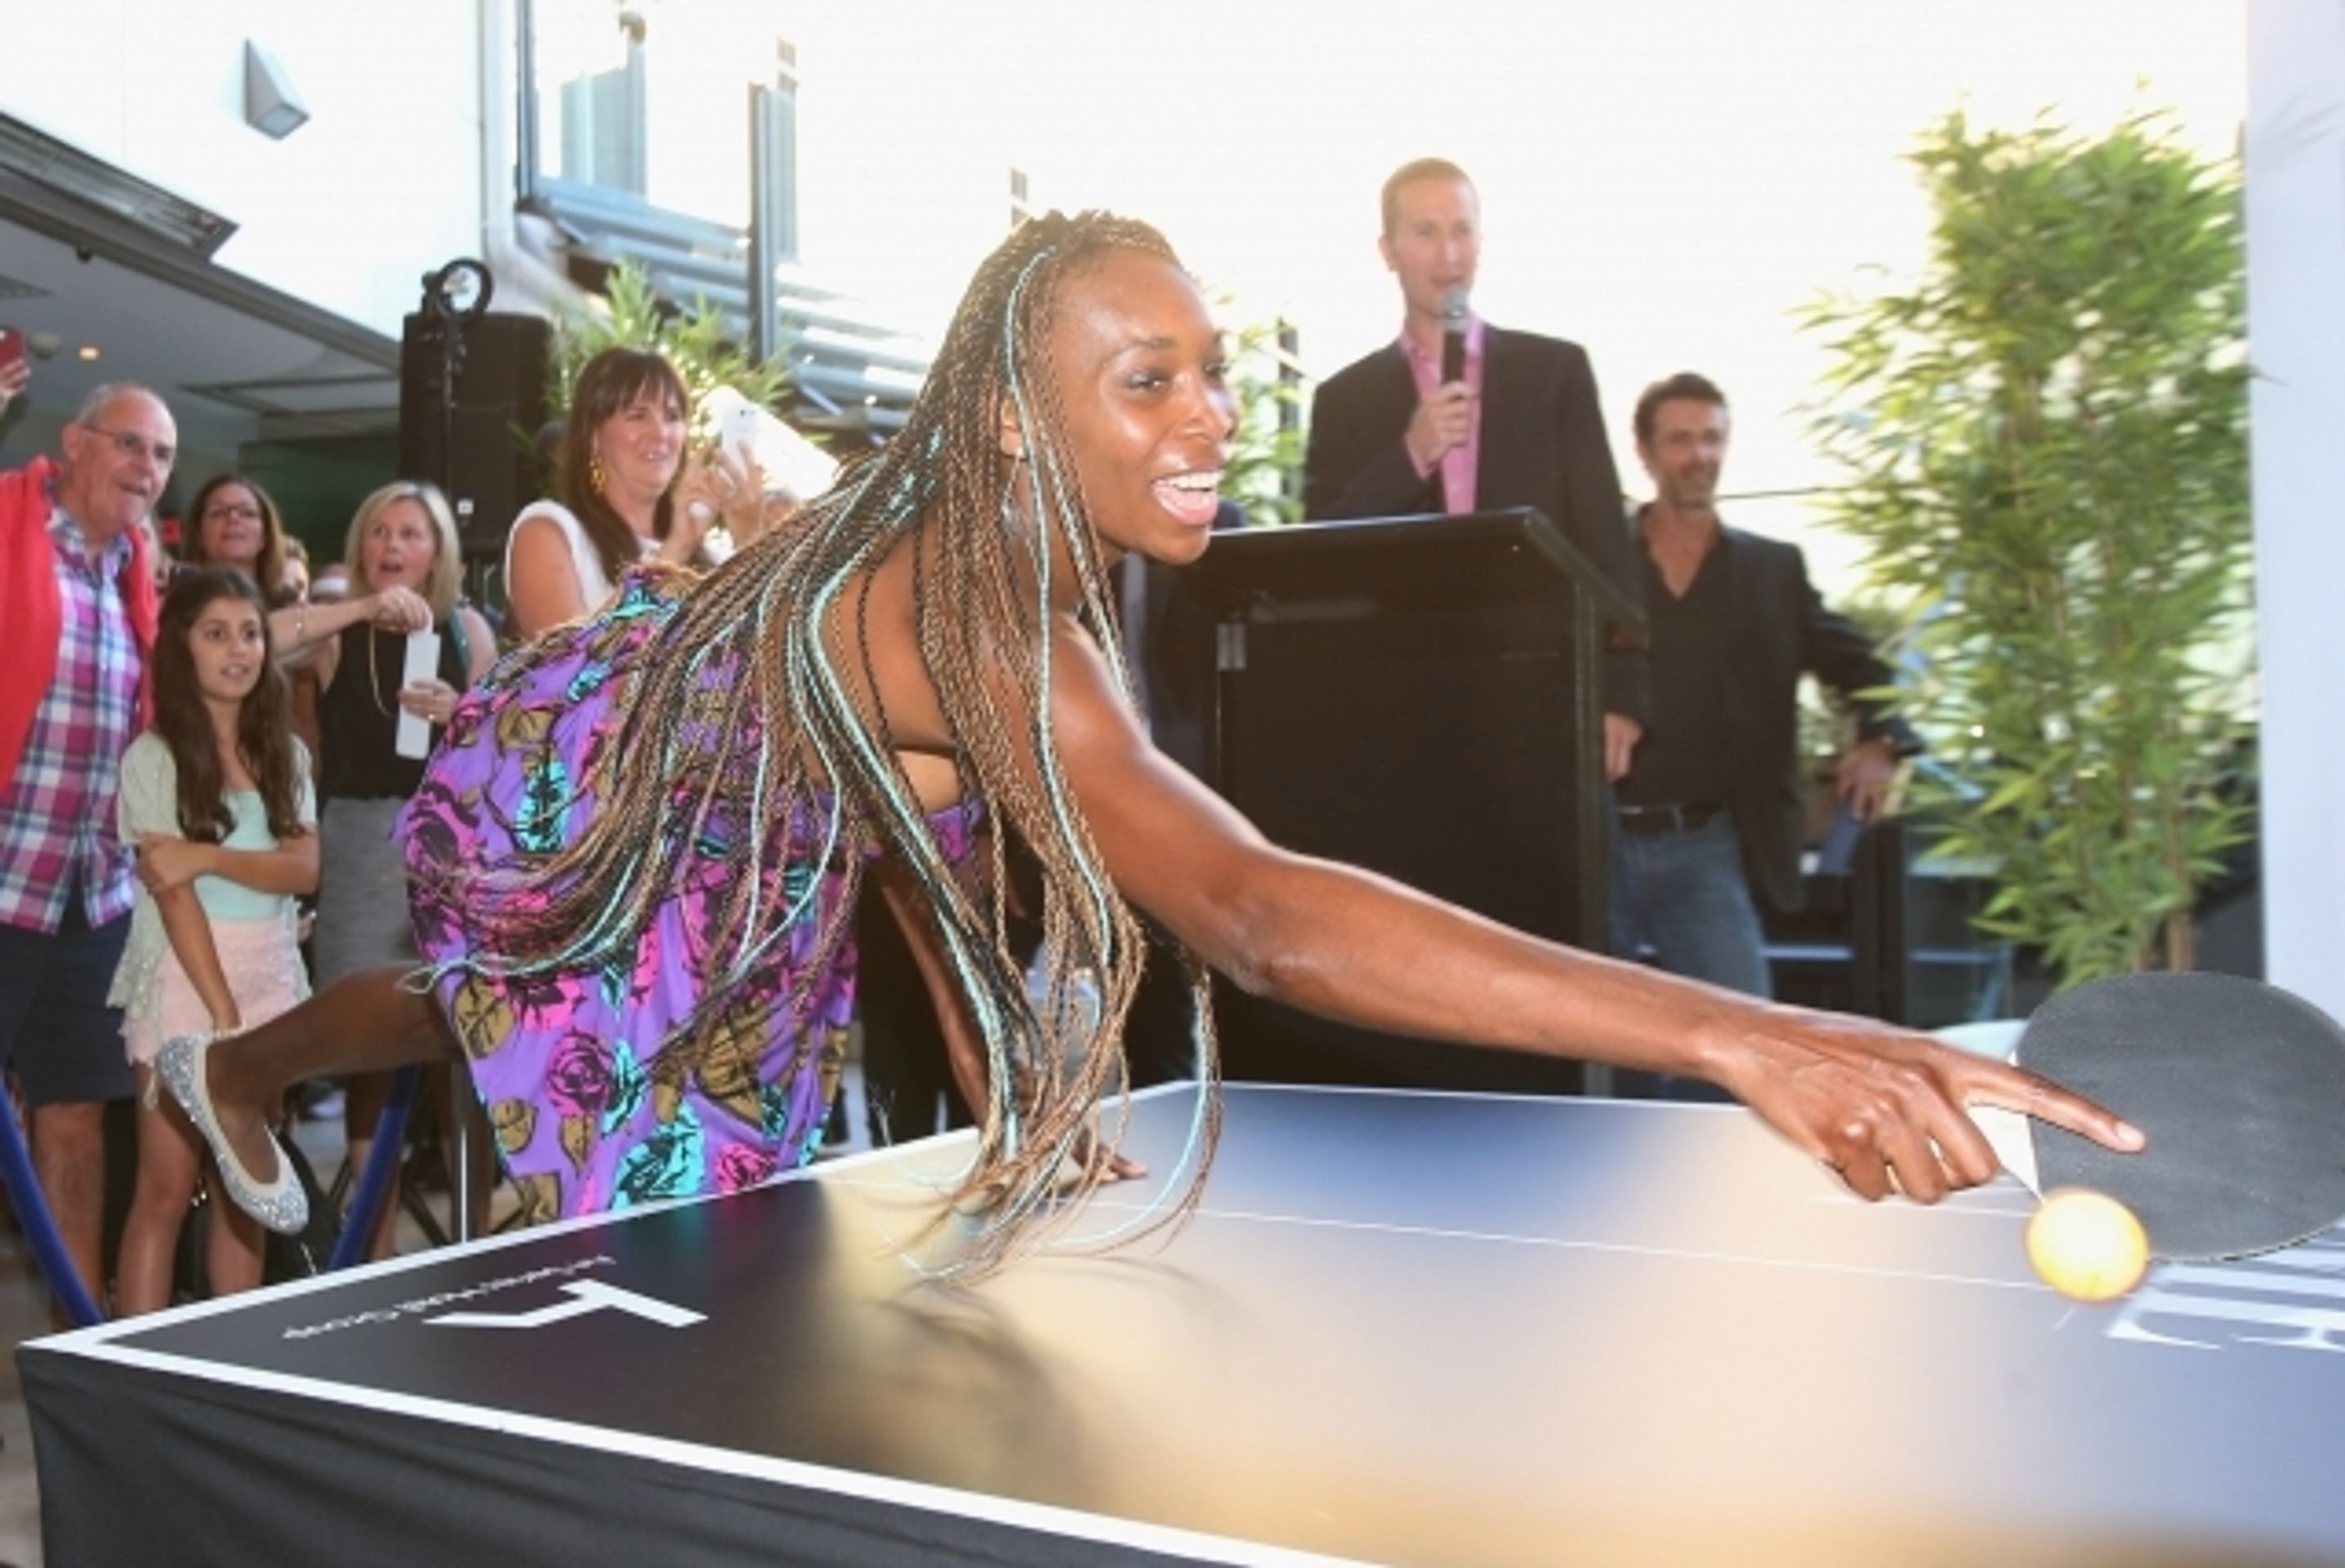 Serena a Venus v Austrálii - 1 - GALERIE: Serena a Venus hrají pingpong (5/8)